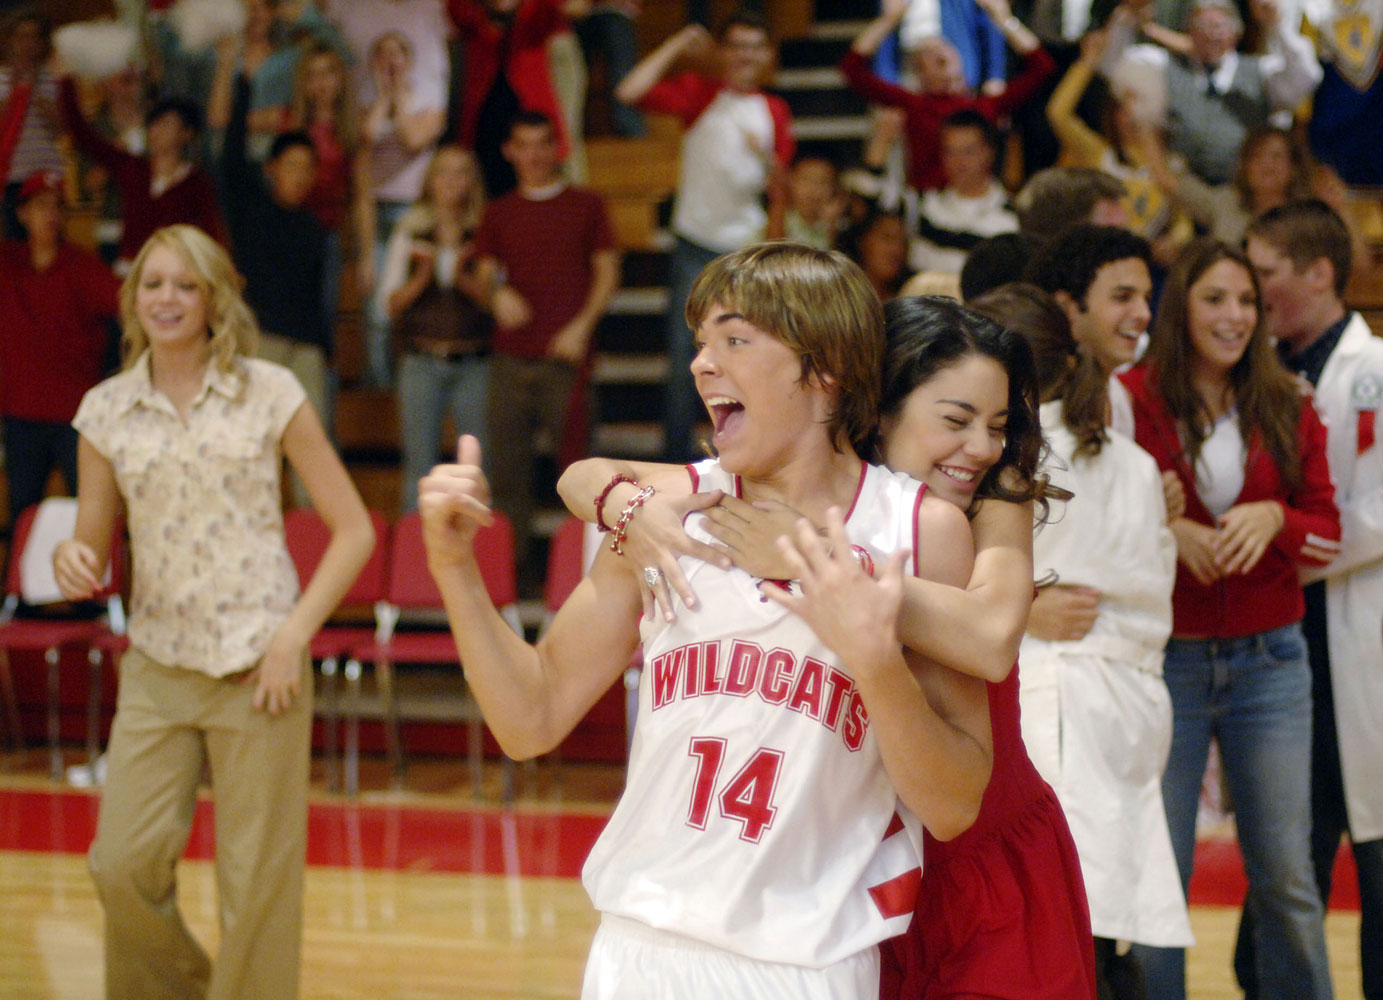 Ortega, Kenny. High School Musical. Disney Channel. 2006.